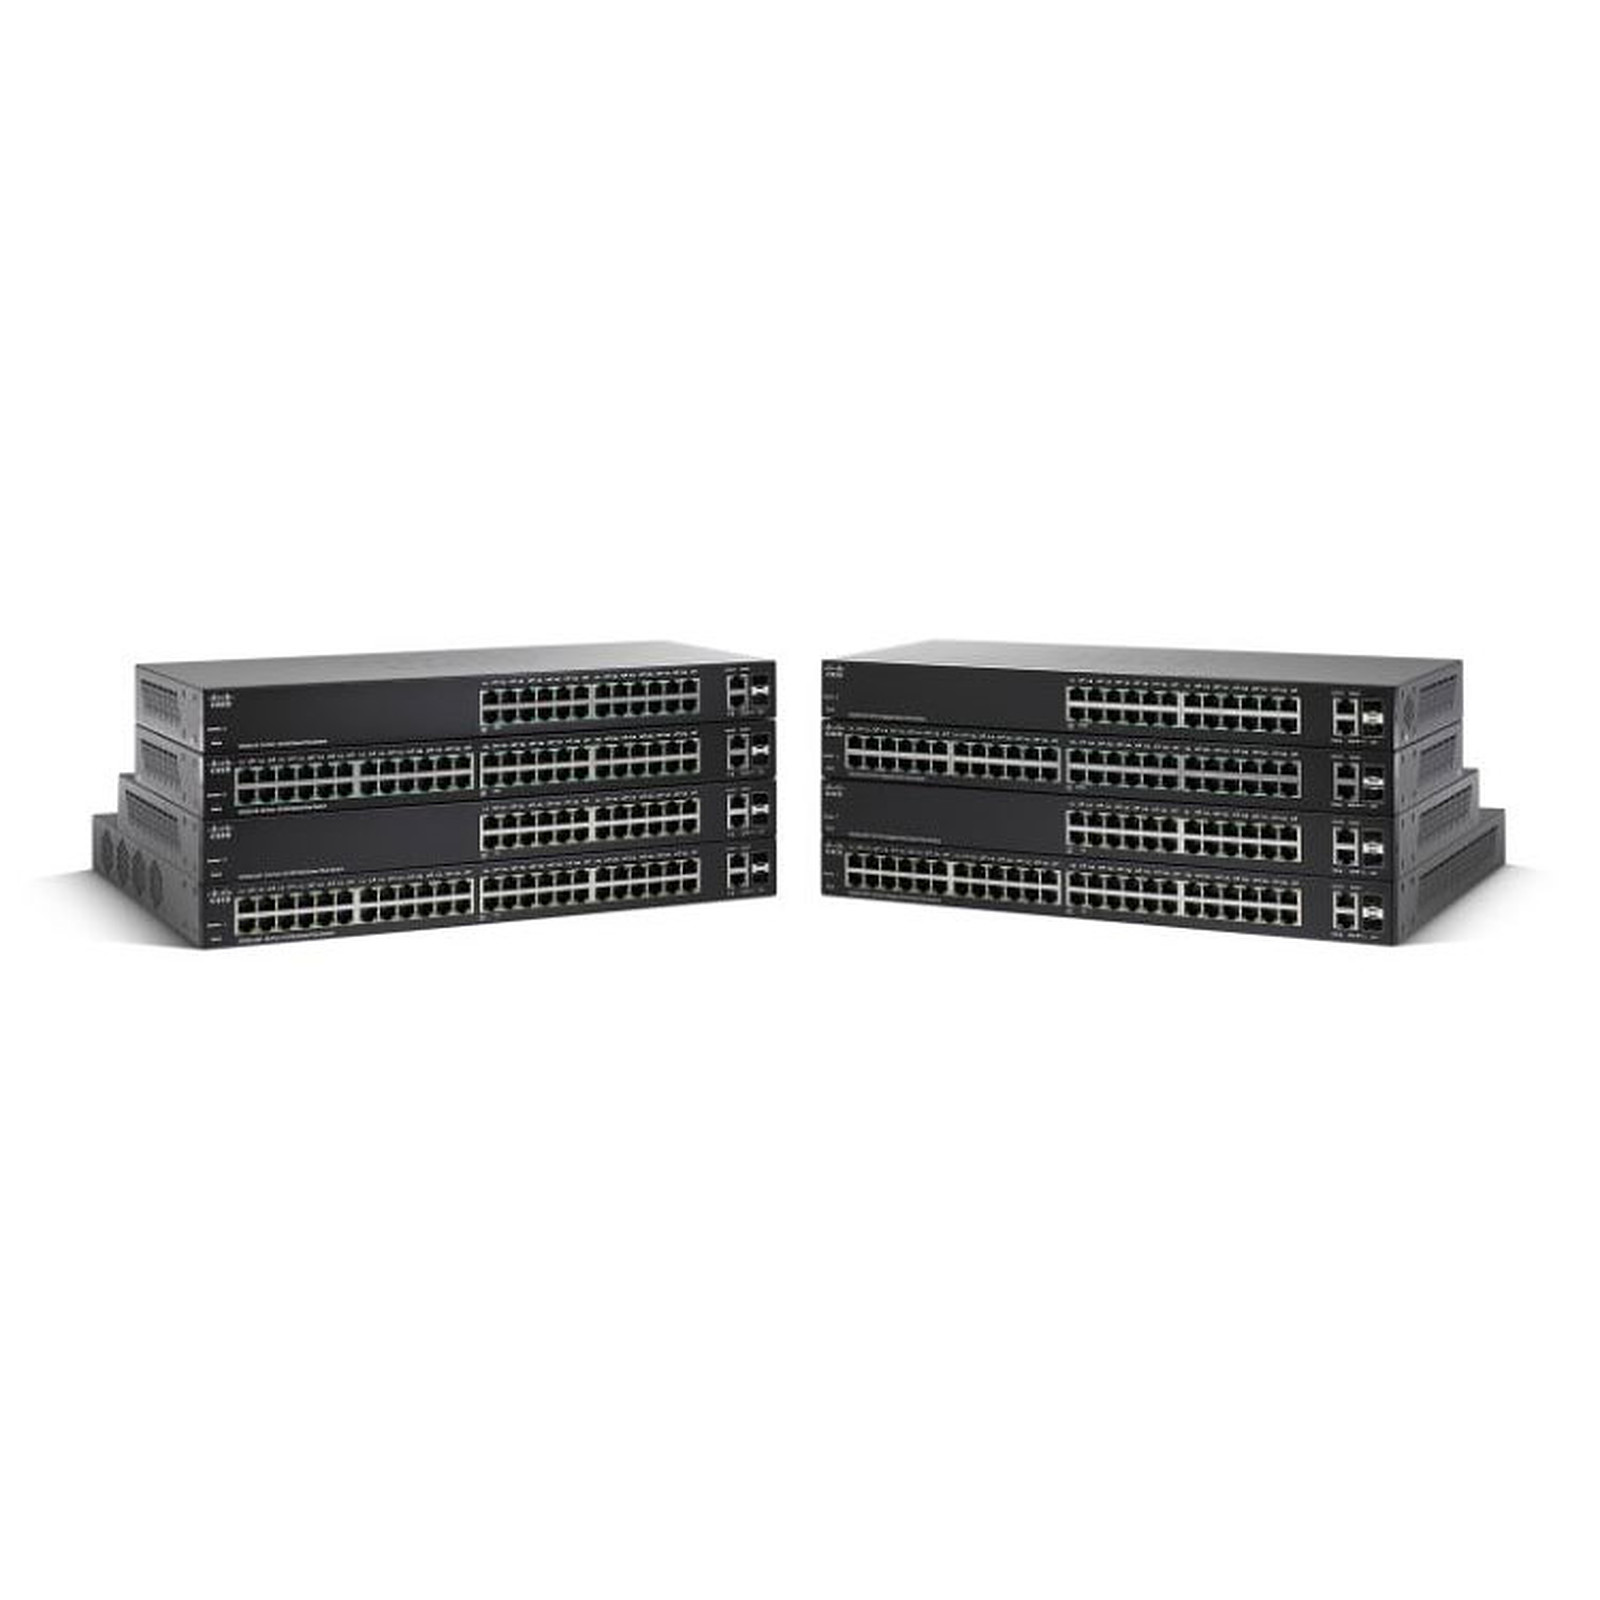 Cisco SG 220-26 - Switch Cisco Systems